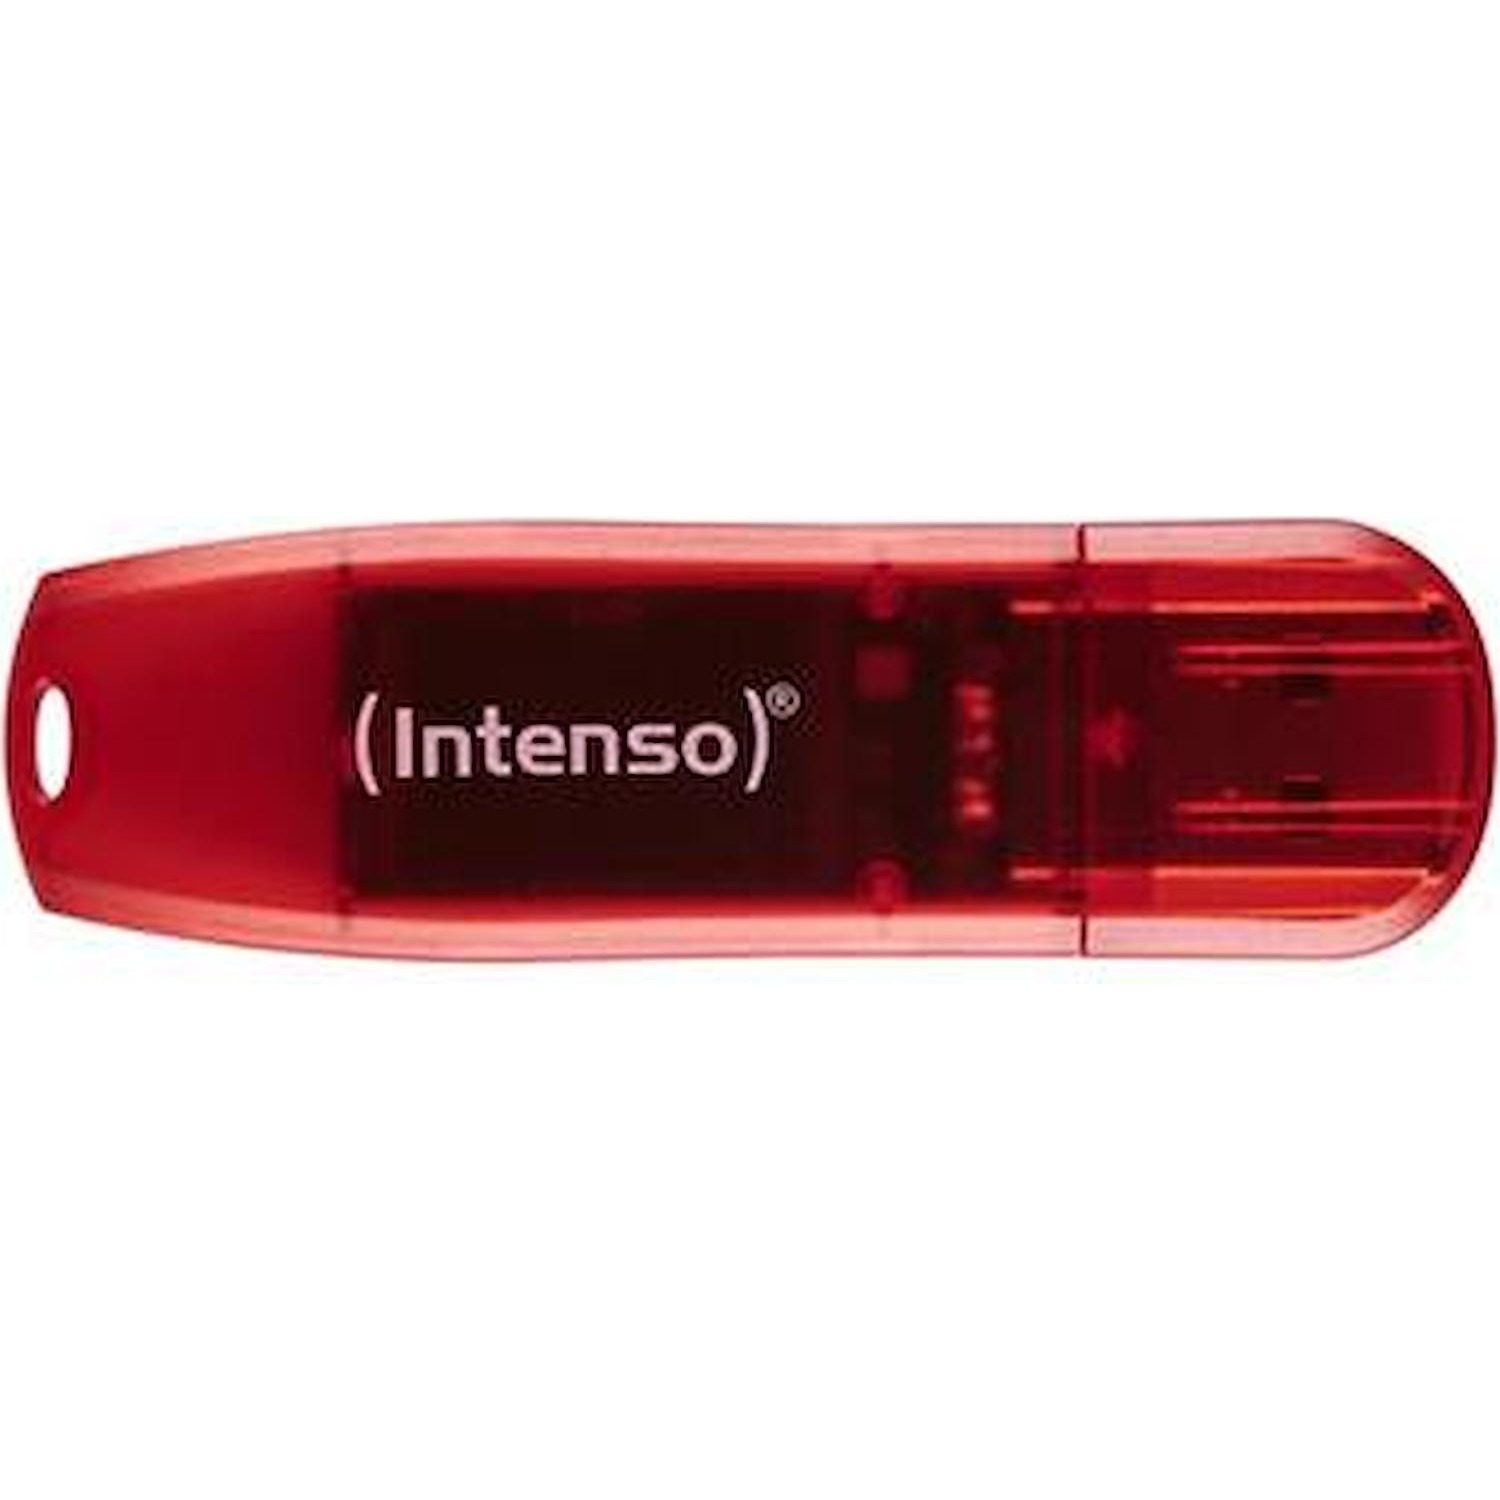 Immagine per Memoria USB Intenso 64GB rossa da DIMOStore